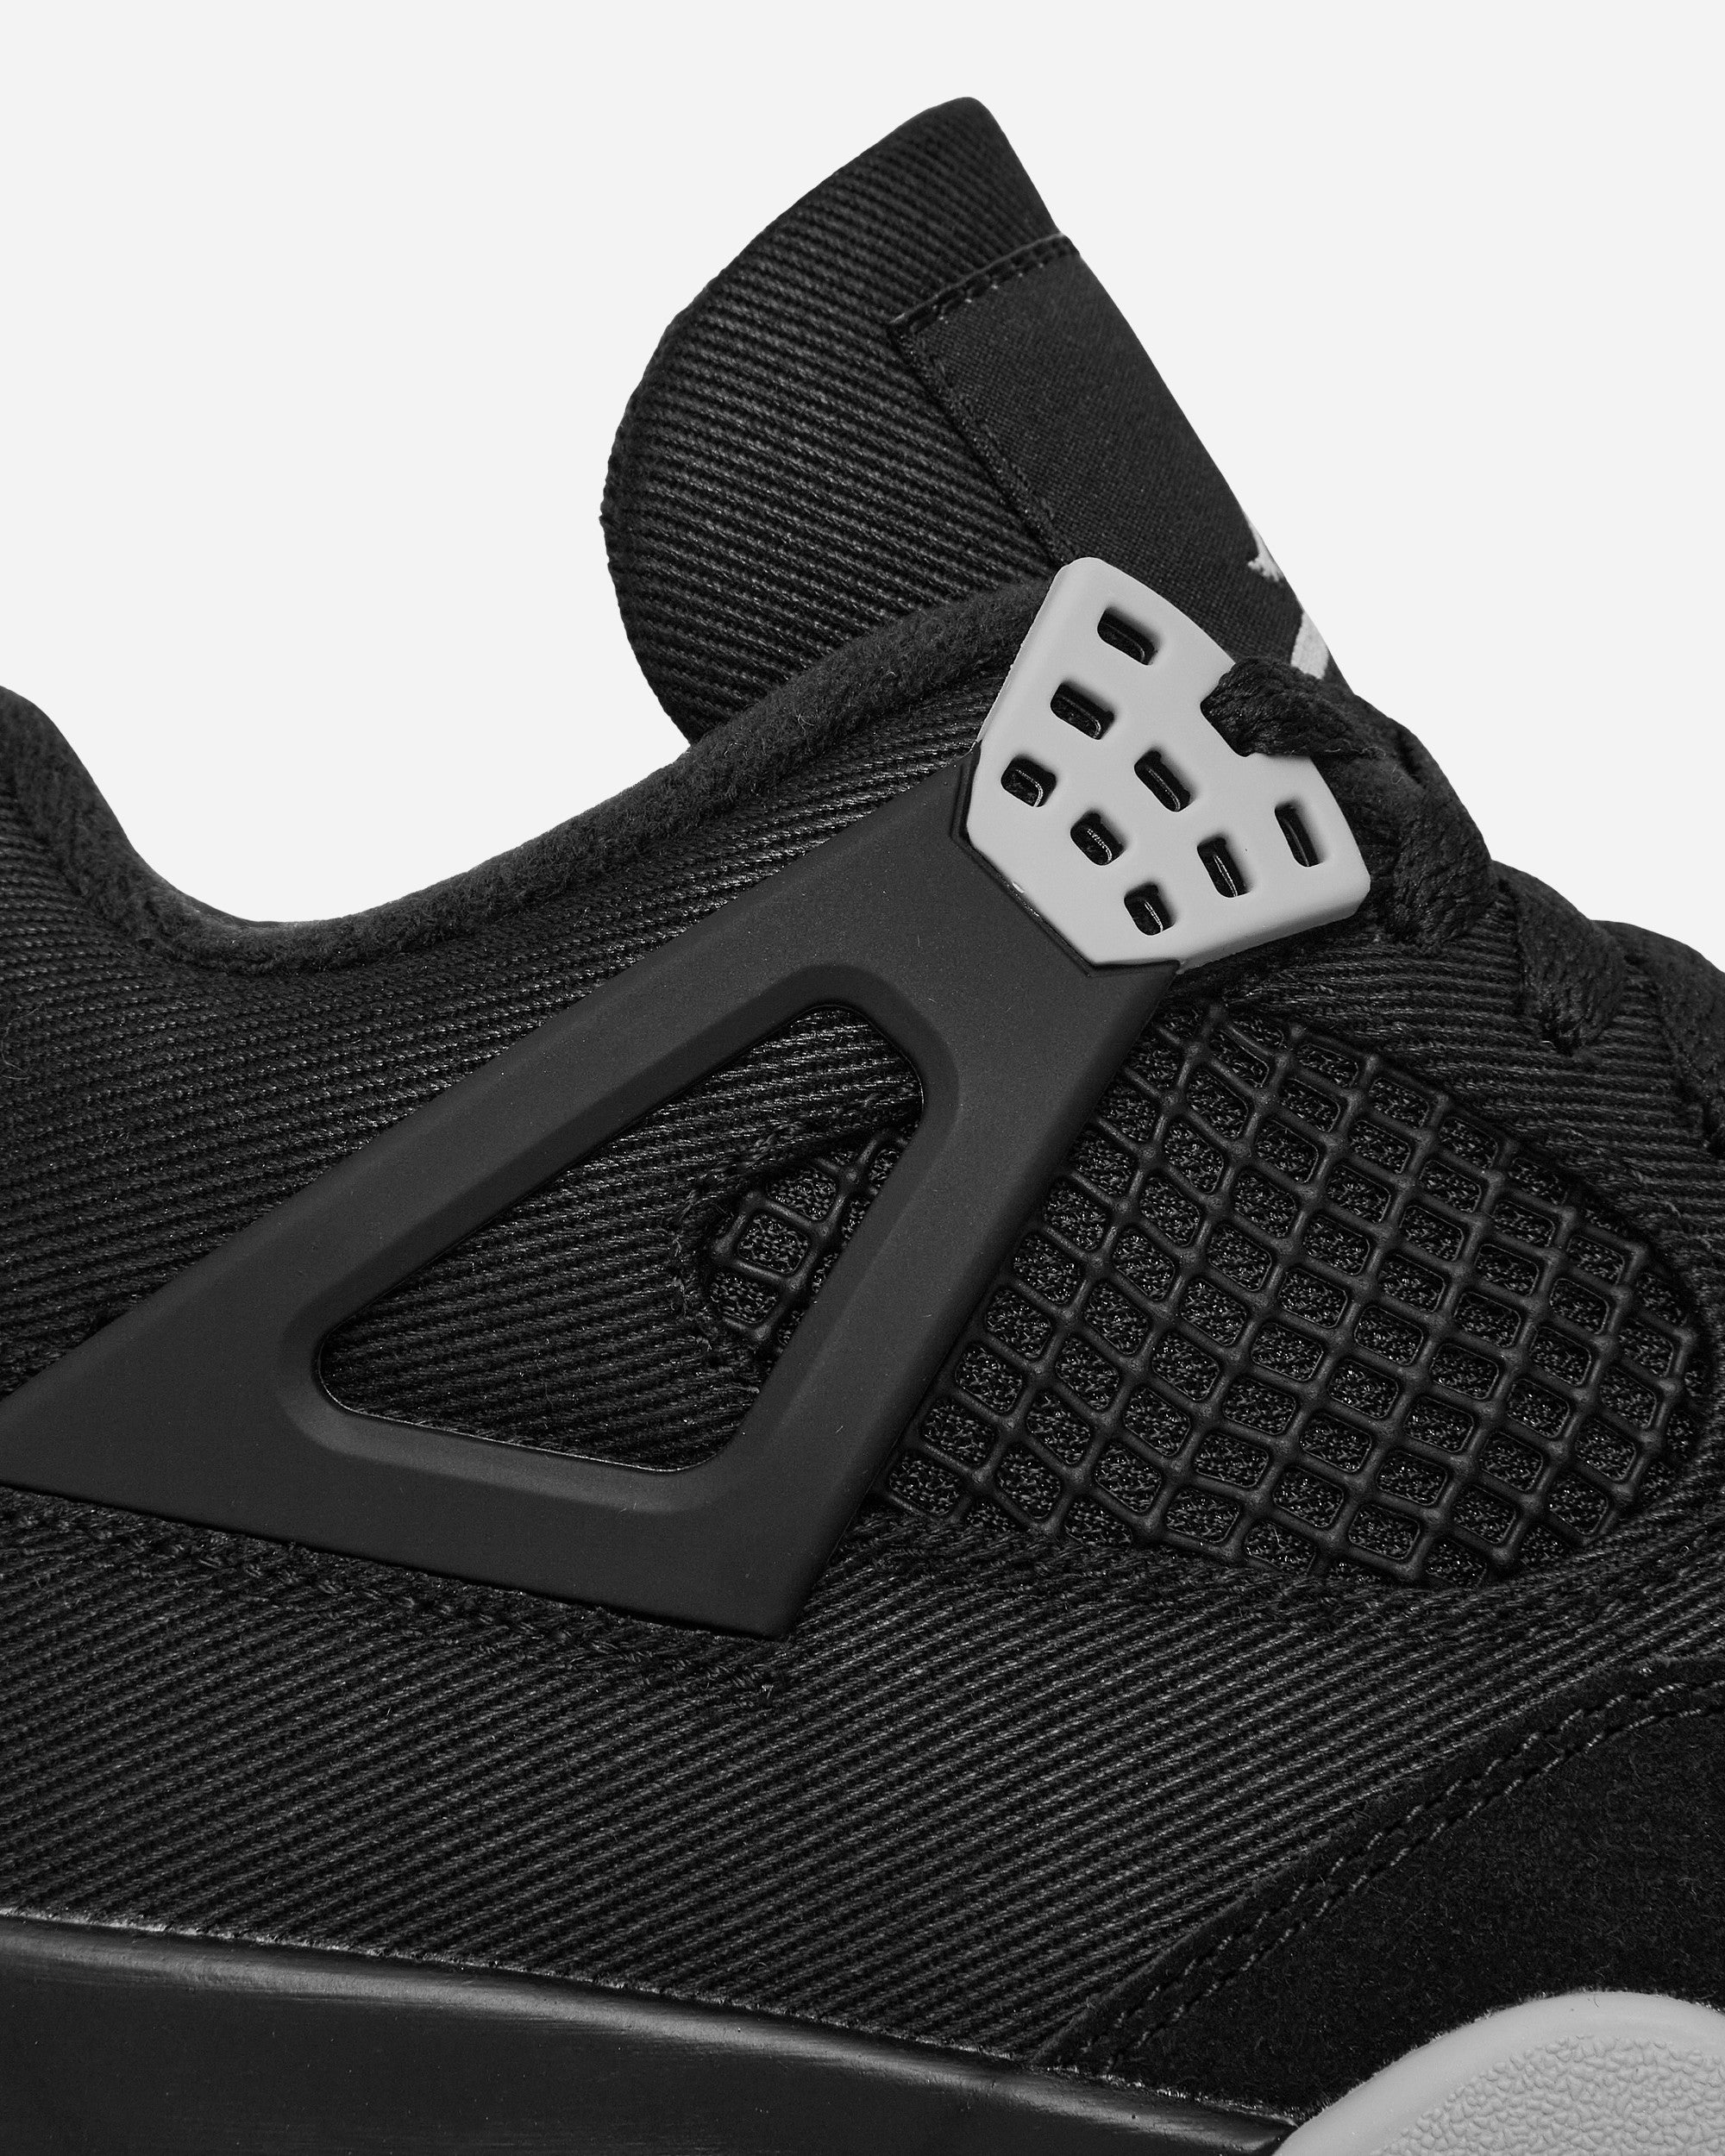 Nike Jordan Air Jordan 4 Retro Se Black/Lt Steel Grey Sneakers High DH7138-006